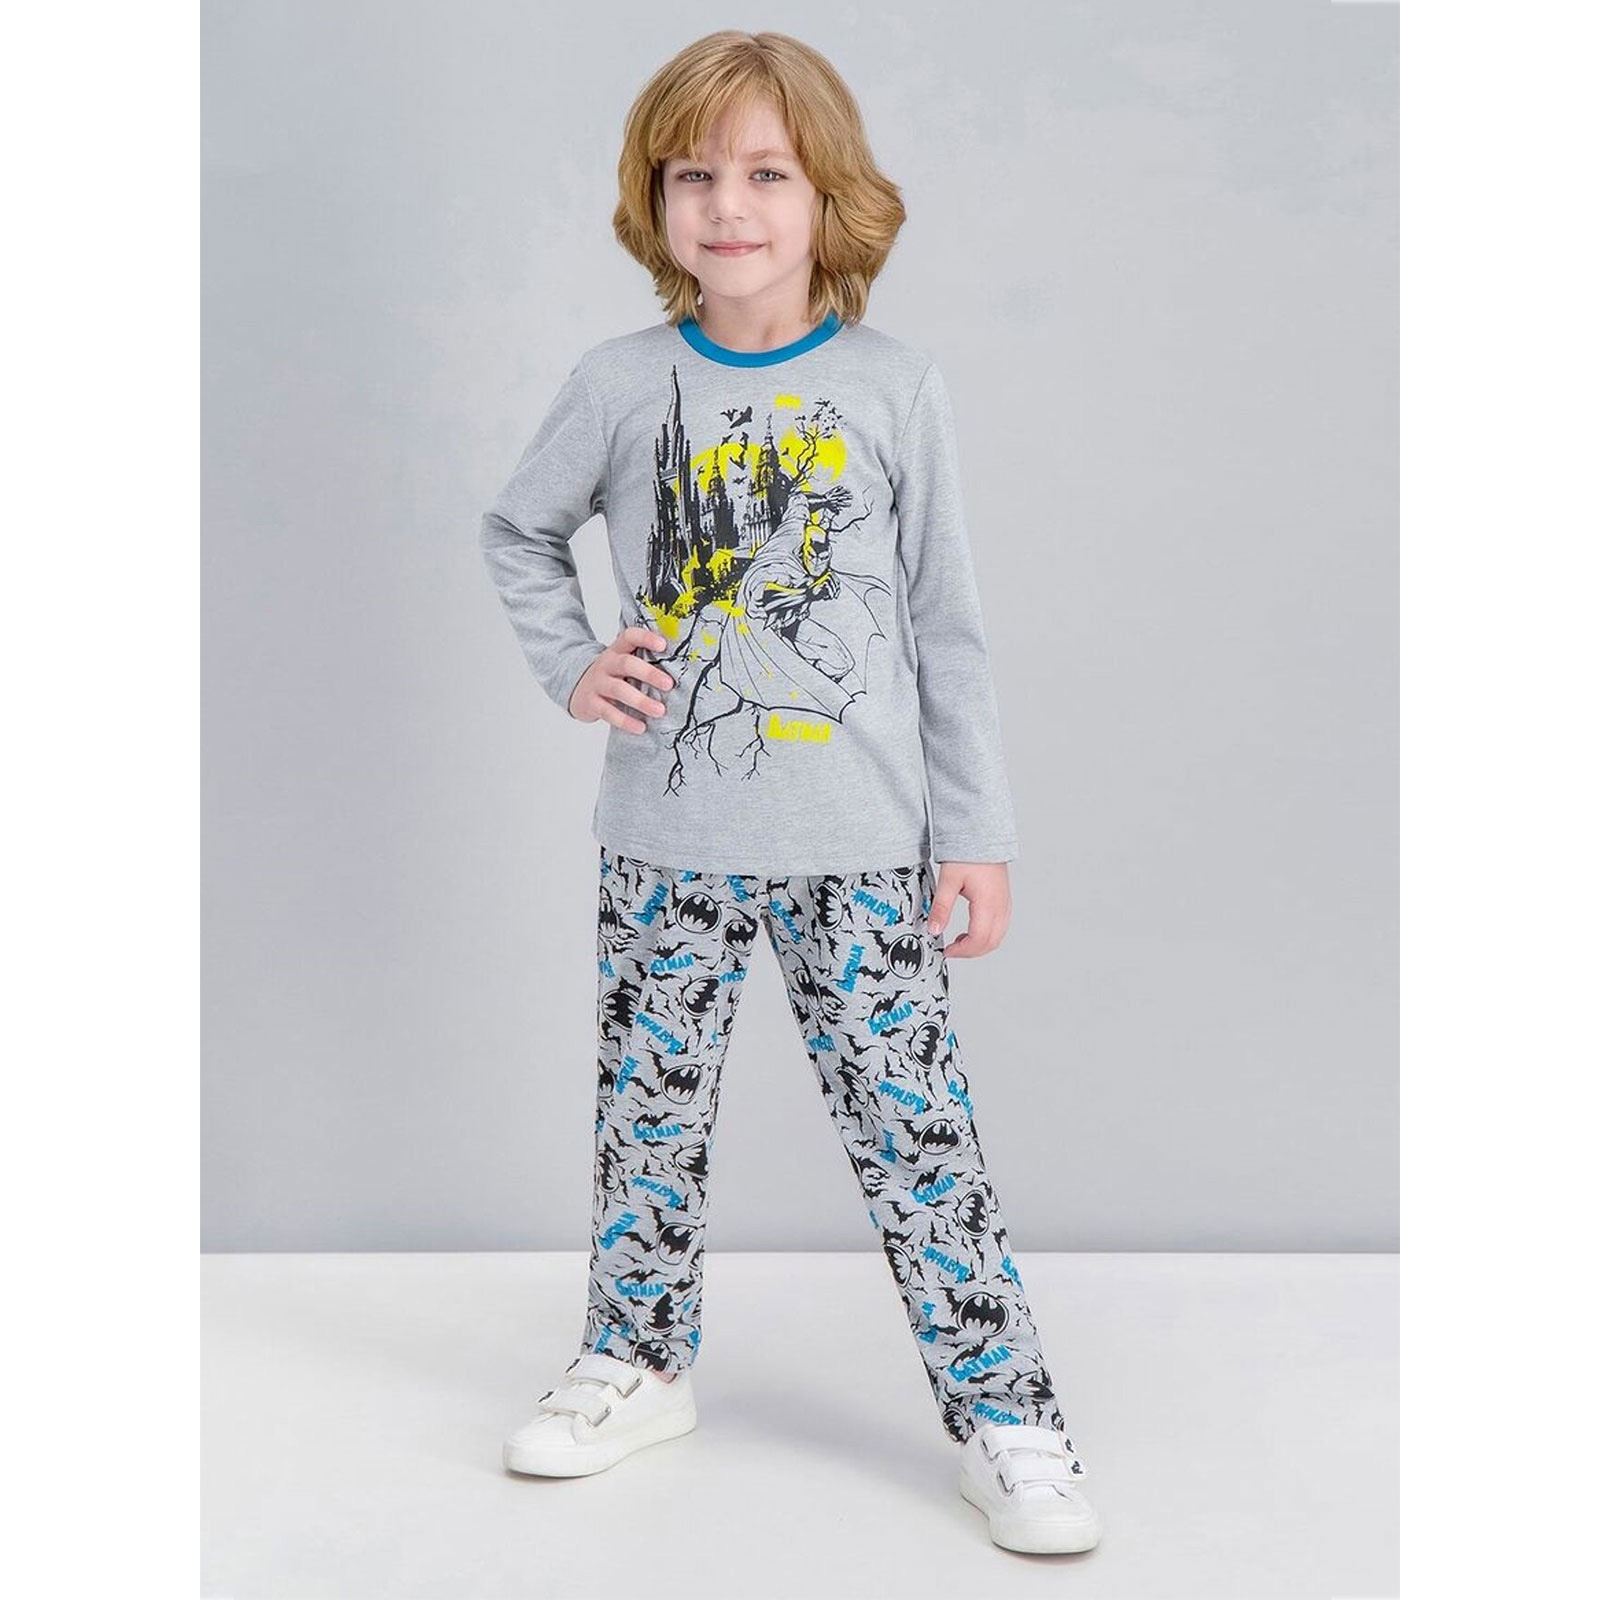 Batman Erkek Çocuk Pijama Takımı 2-5 Yaş Gri